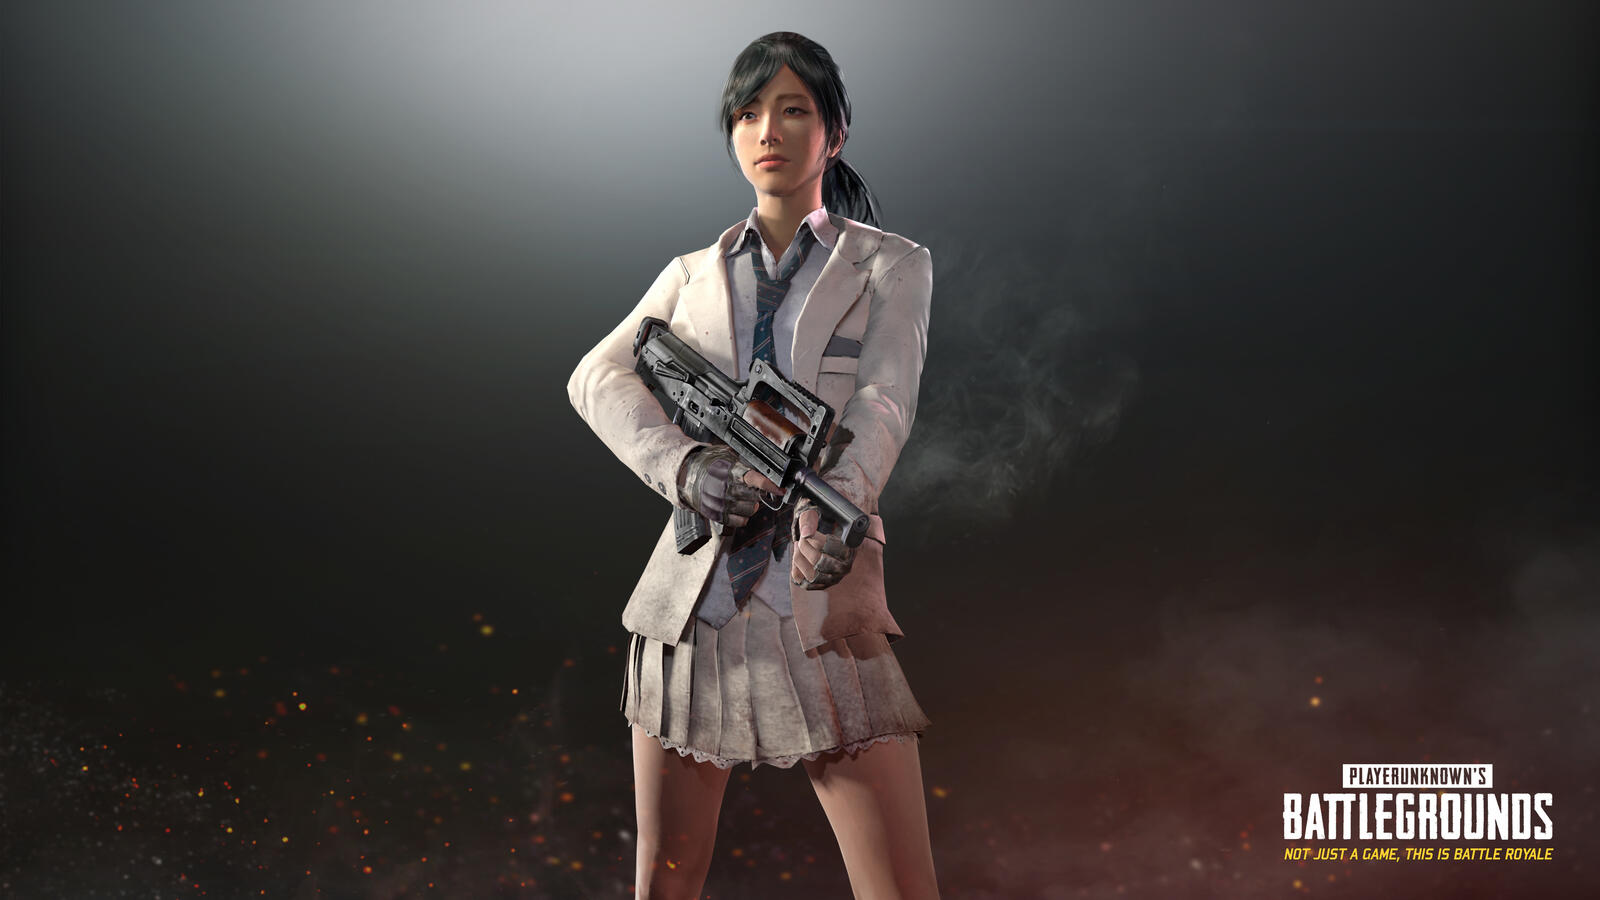 Бесплатное фото Девочка в белом костюме с автоматической винтовкой из игры Playerunknowns Battlegrounds